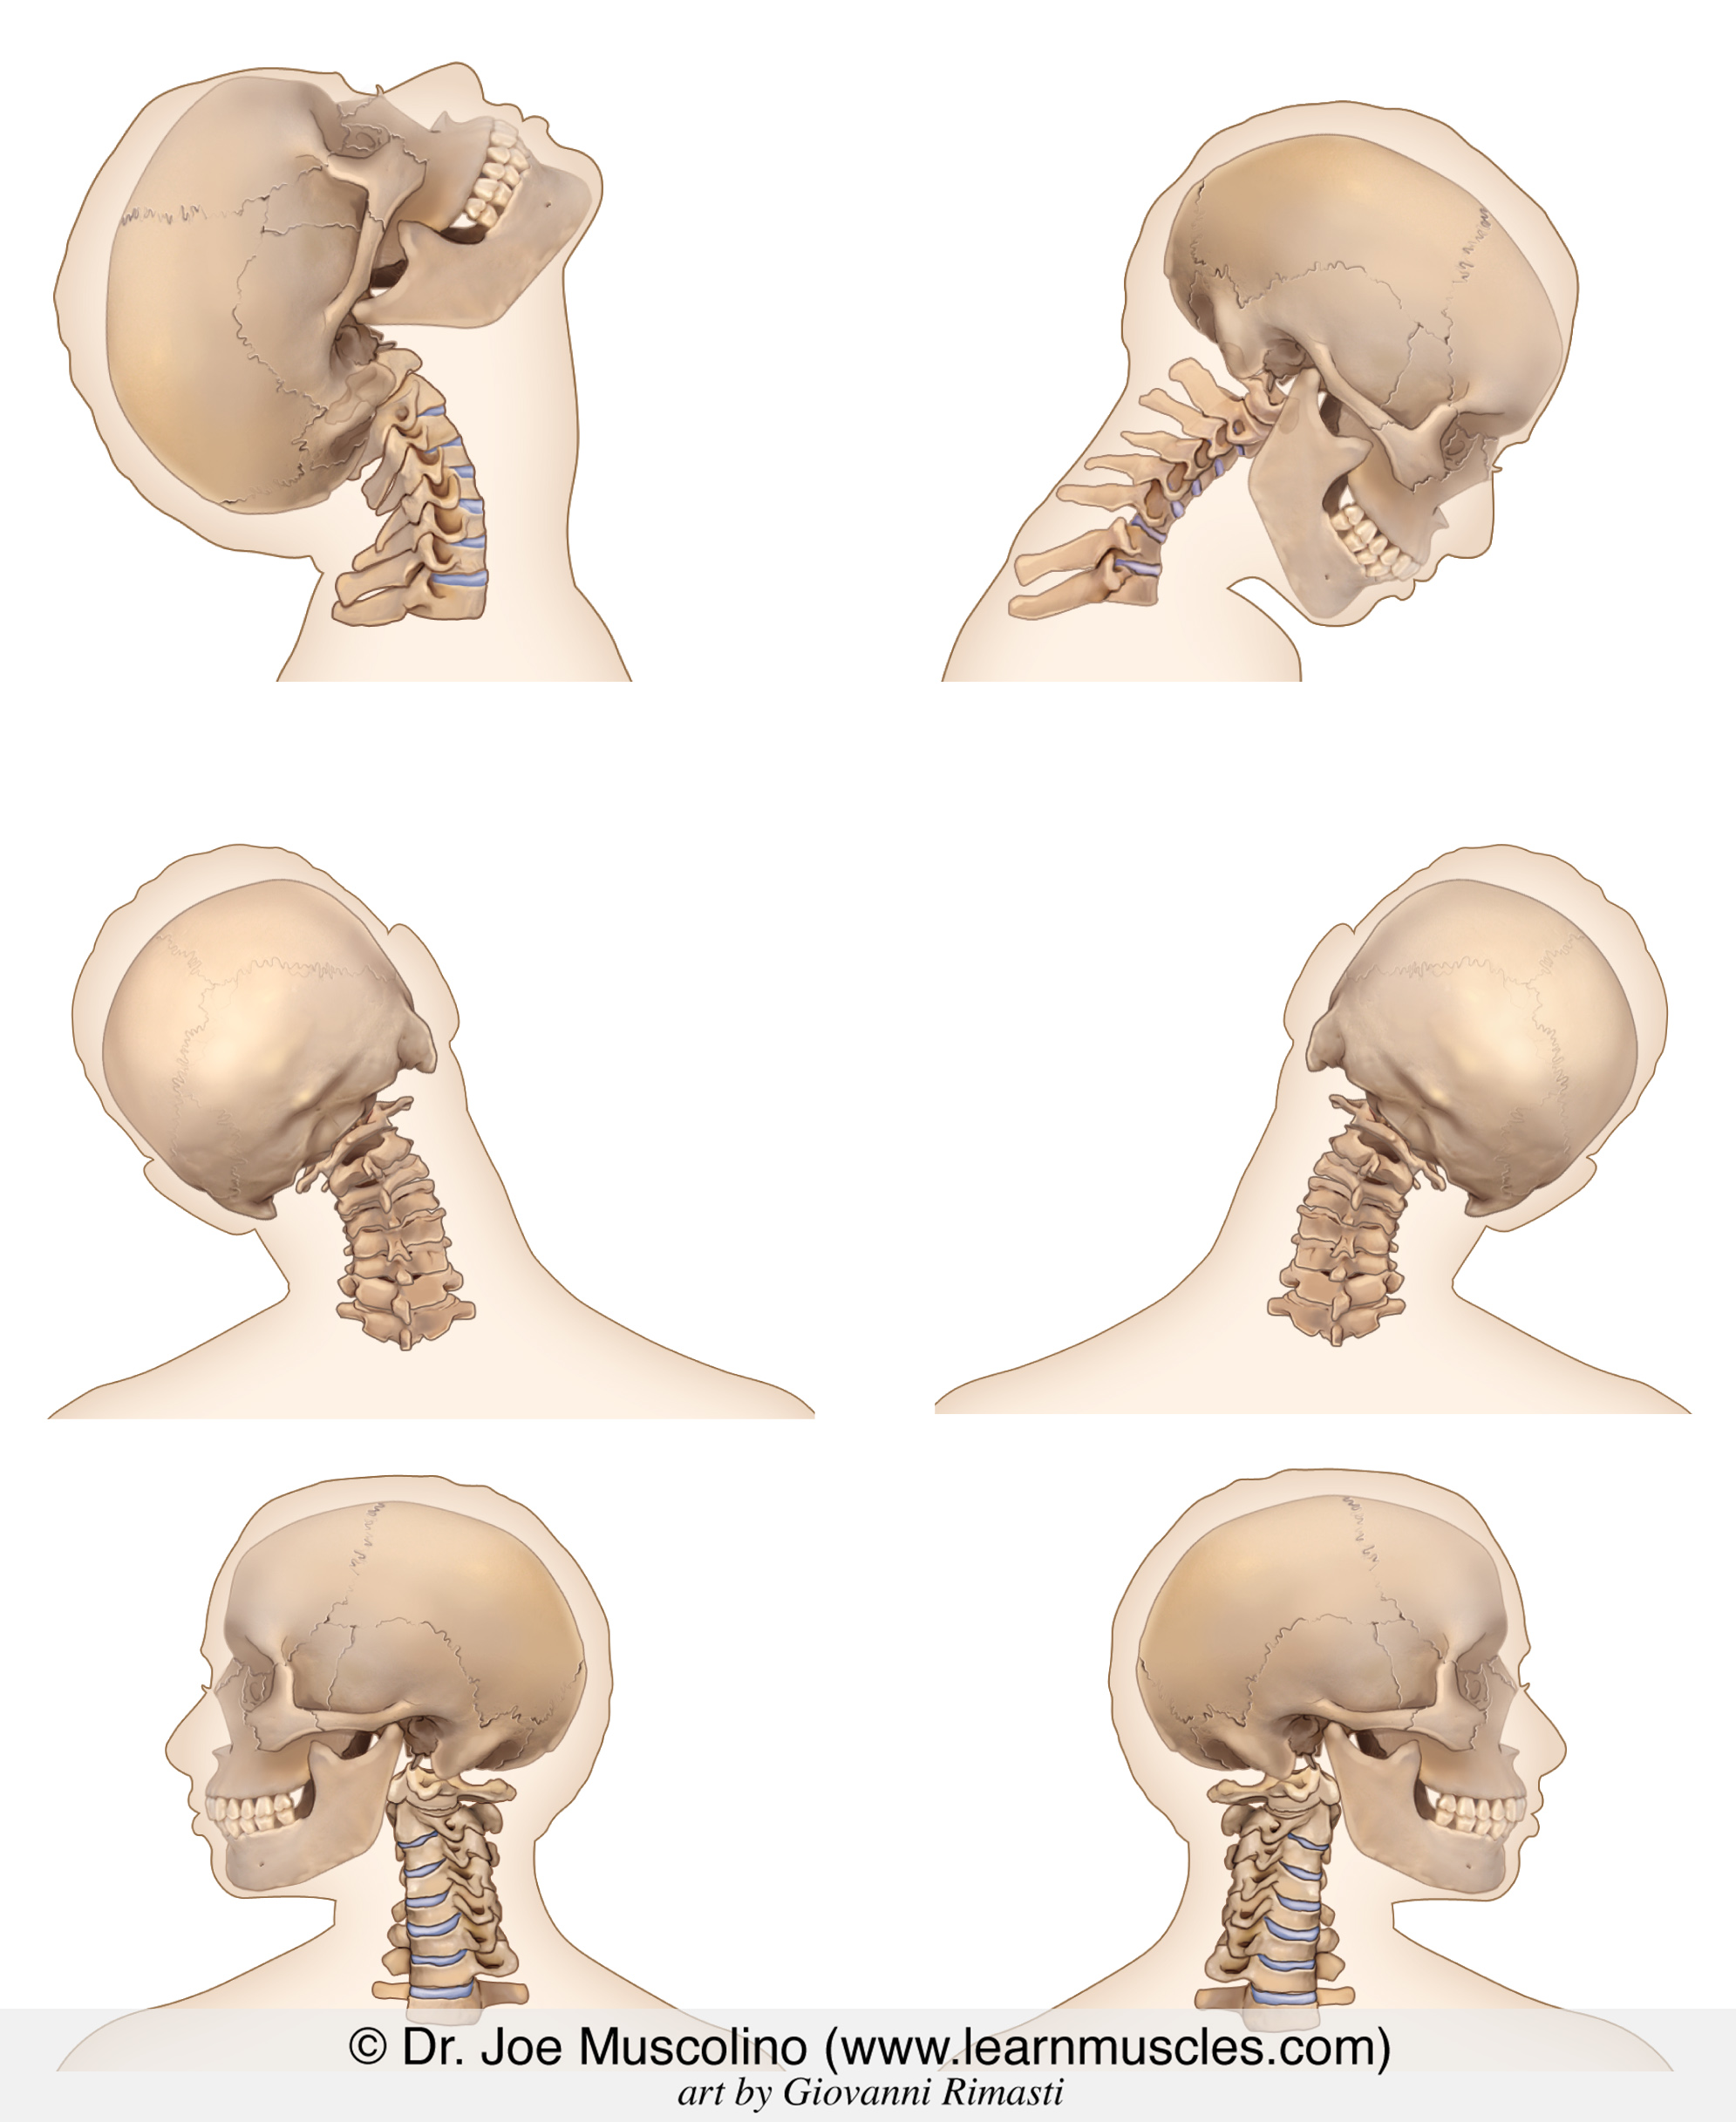 Cervical Spine Anatomy (Neck)